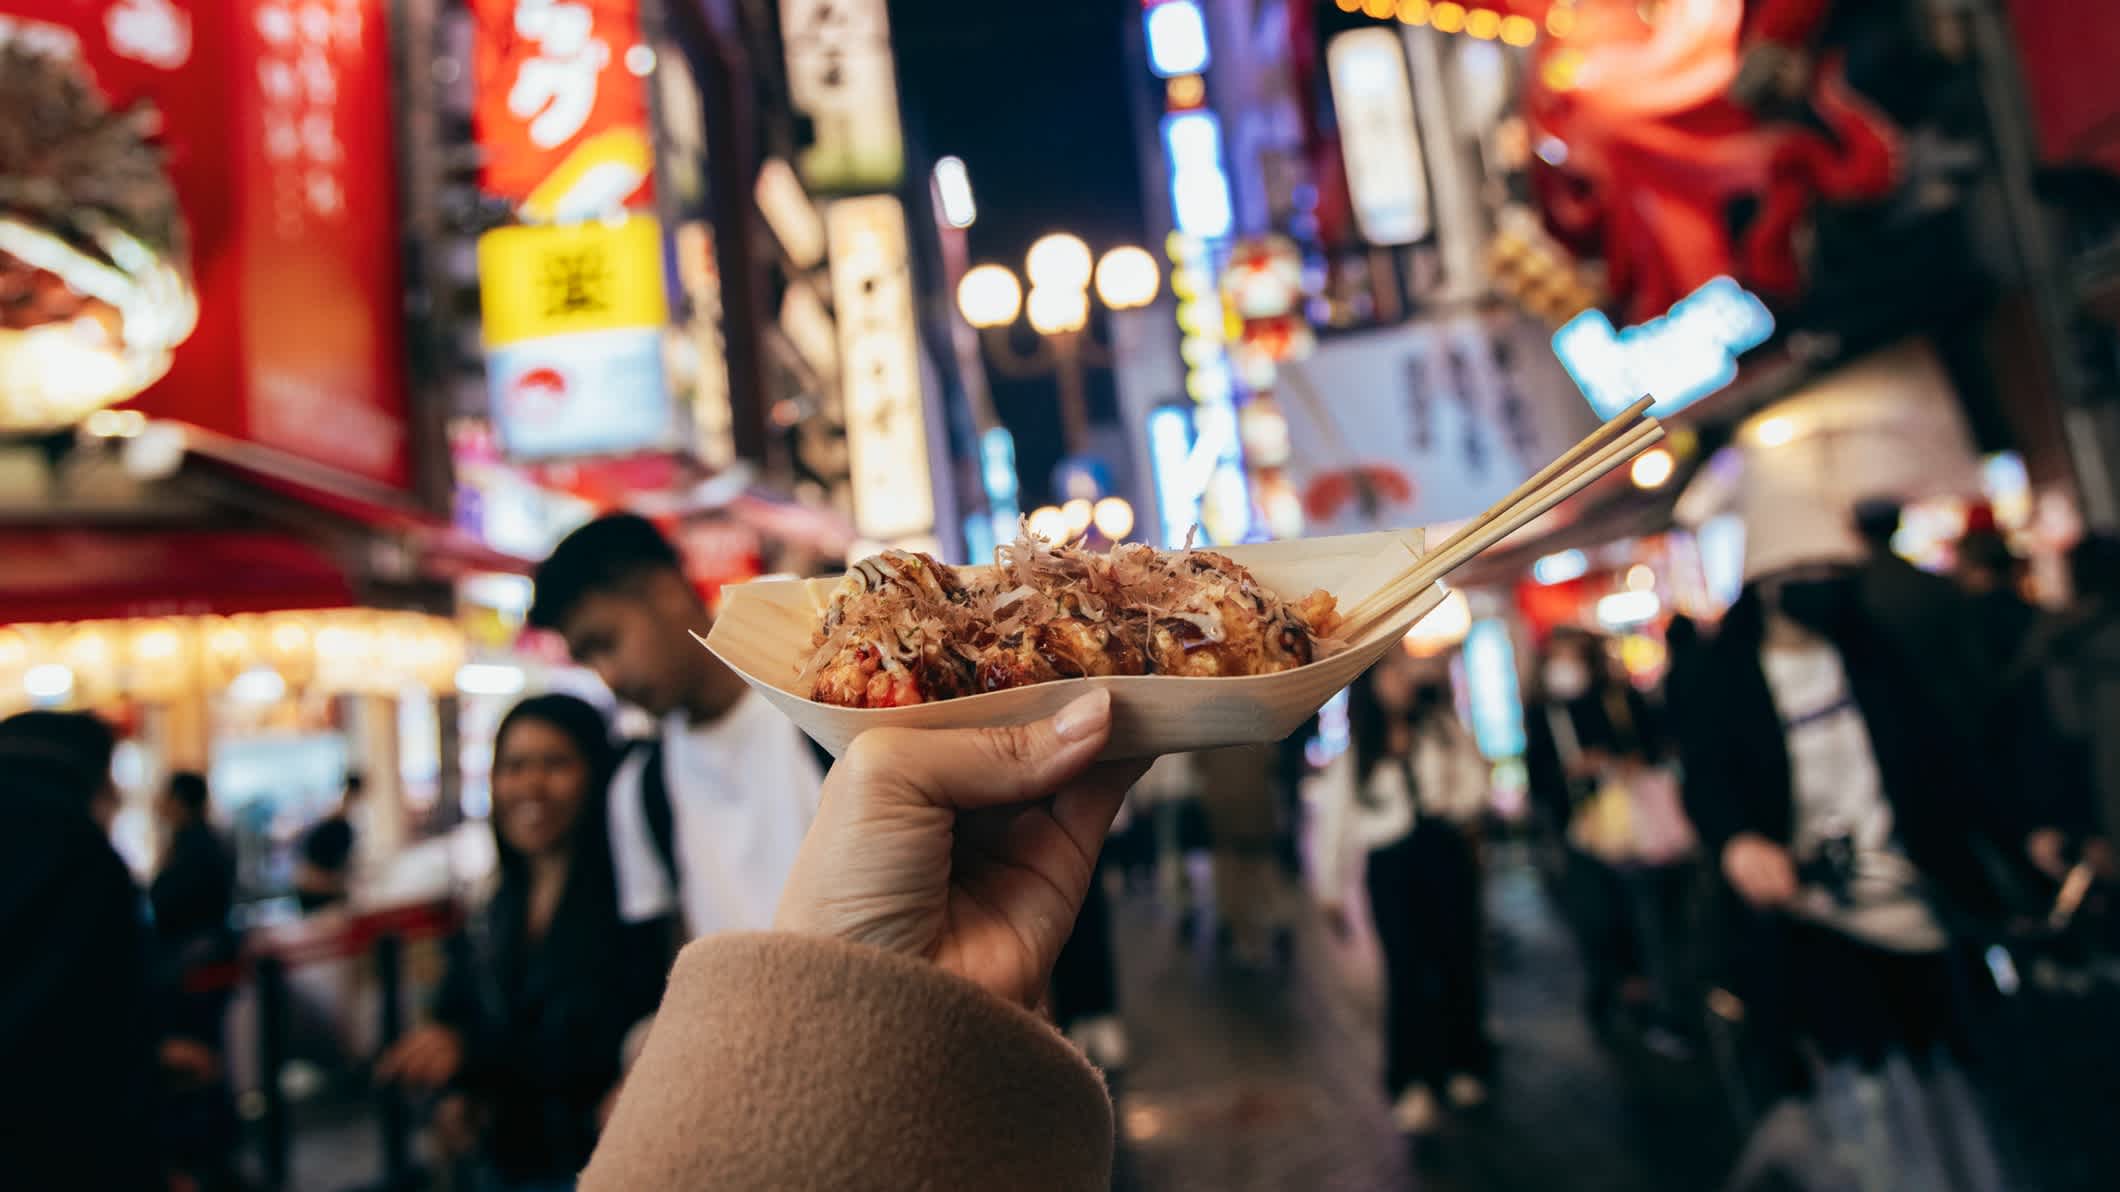 Streetfood japonaise dans une rue signalée par des enseignes lumineuses